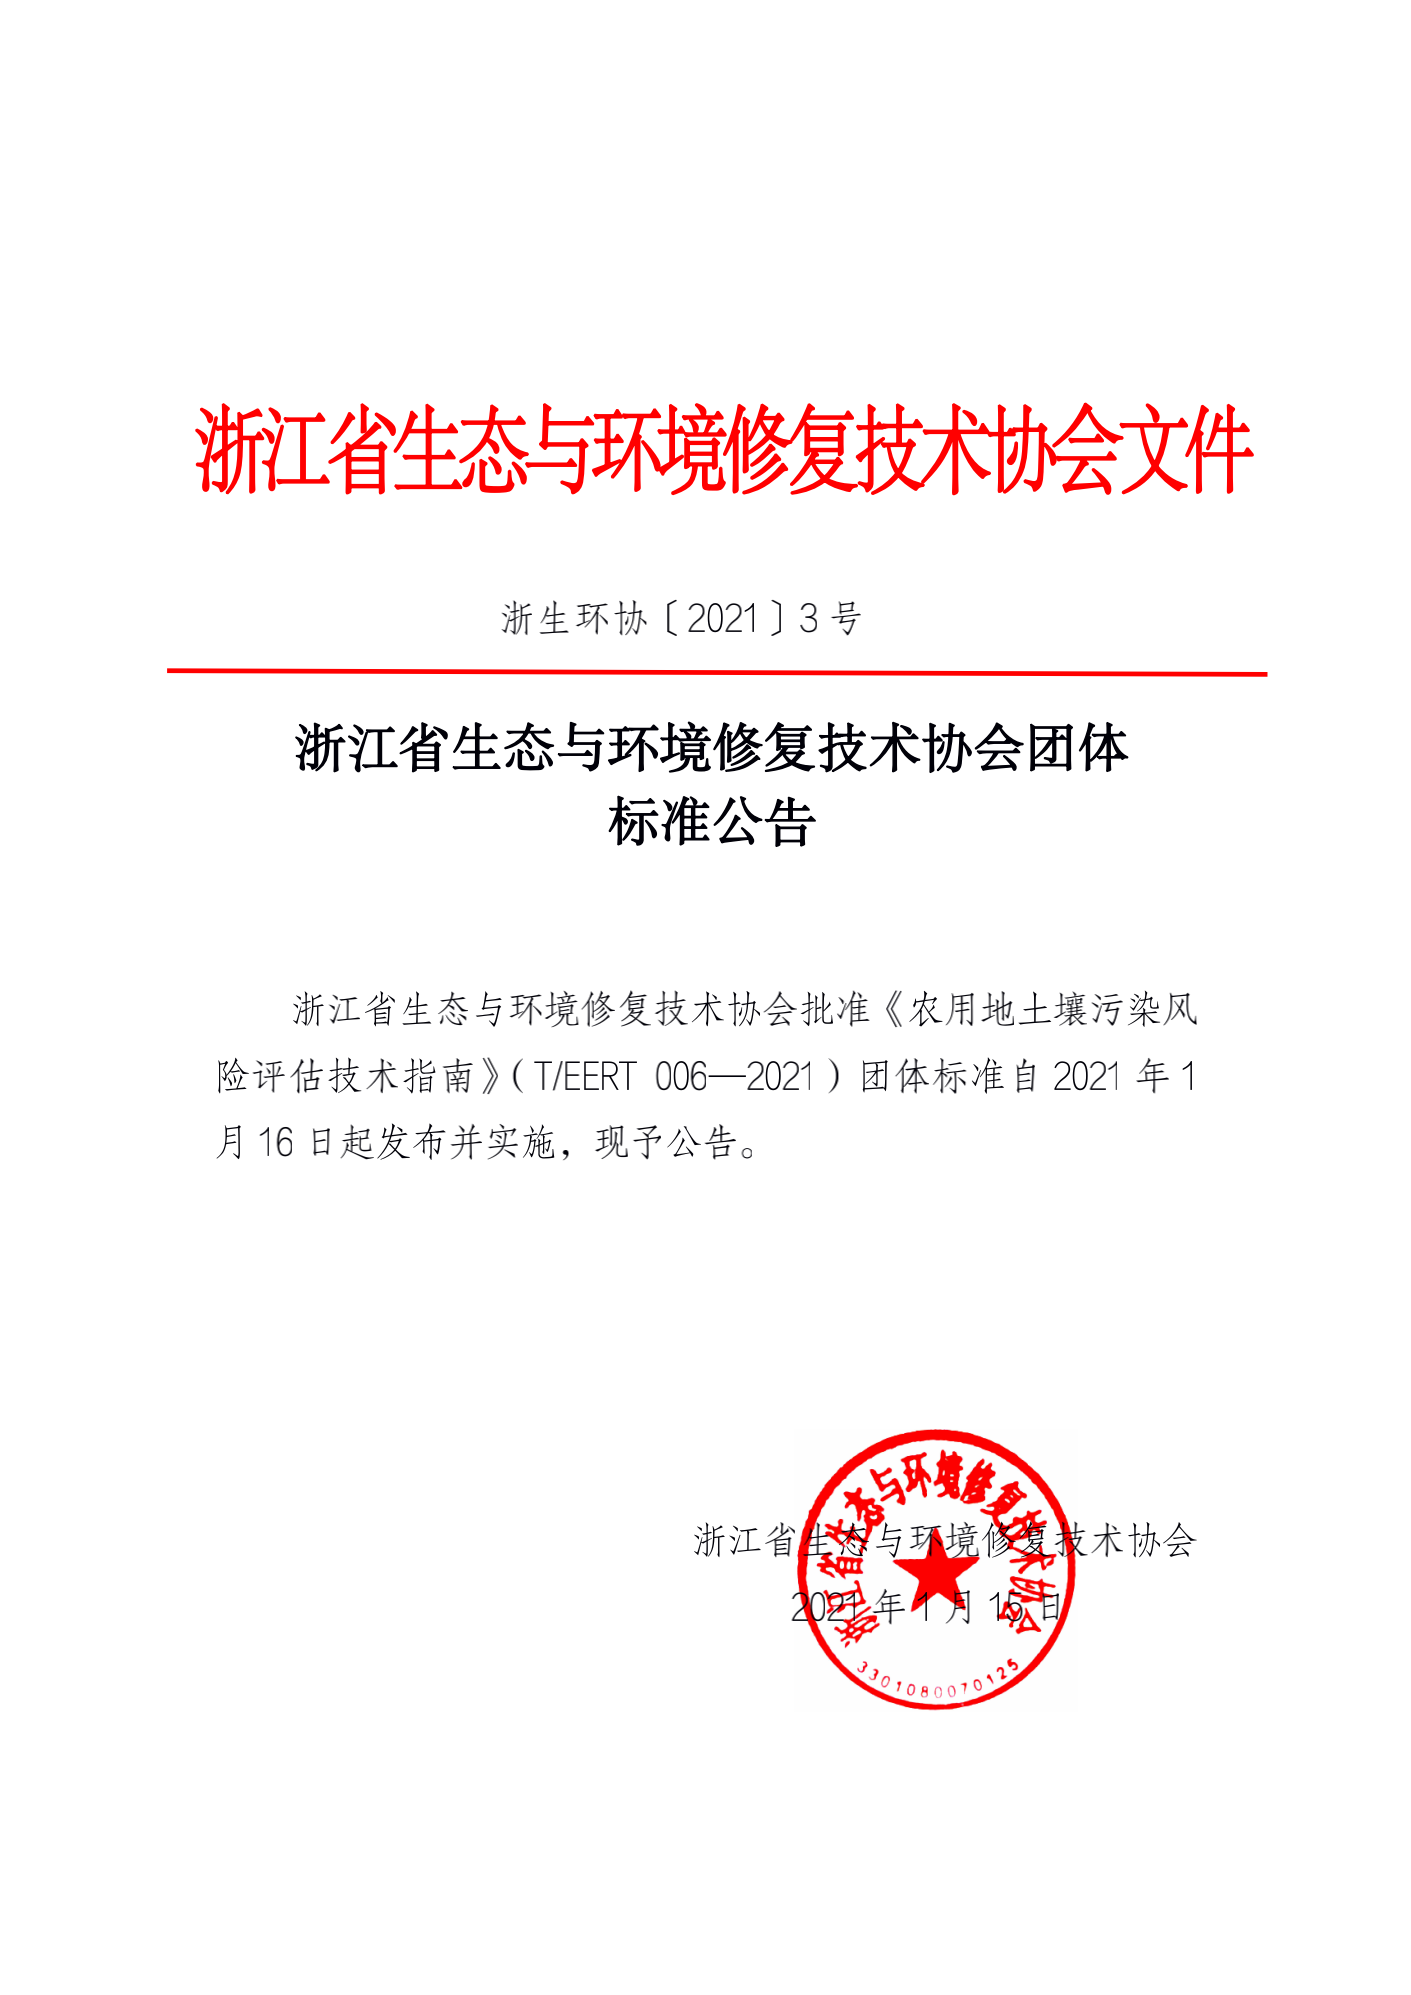 【2021-03】浙江省生态与环境修复技术协会团体标准公告_00.png